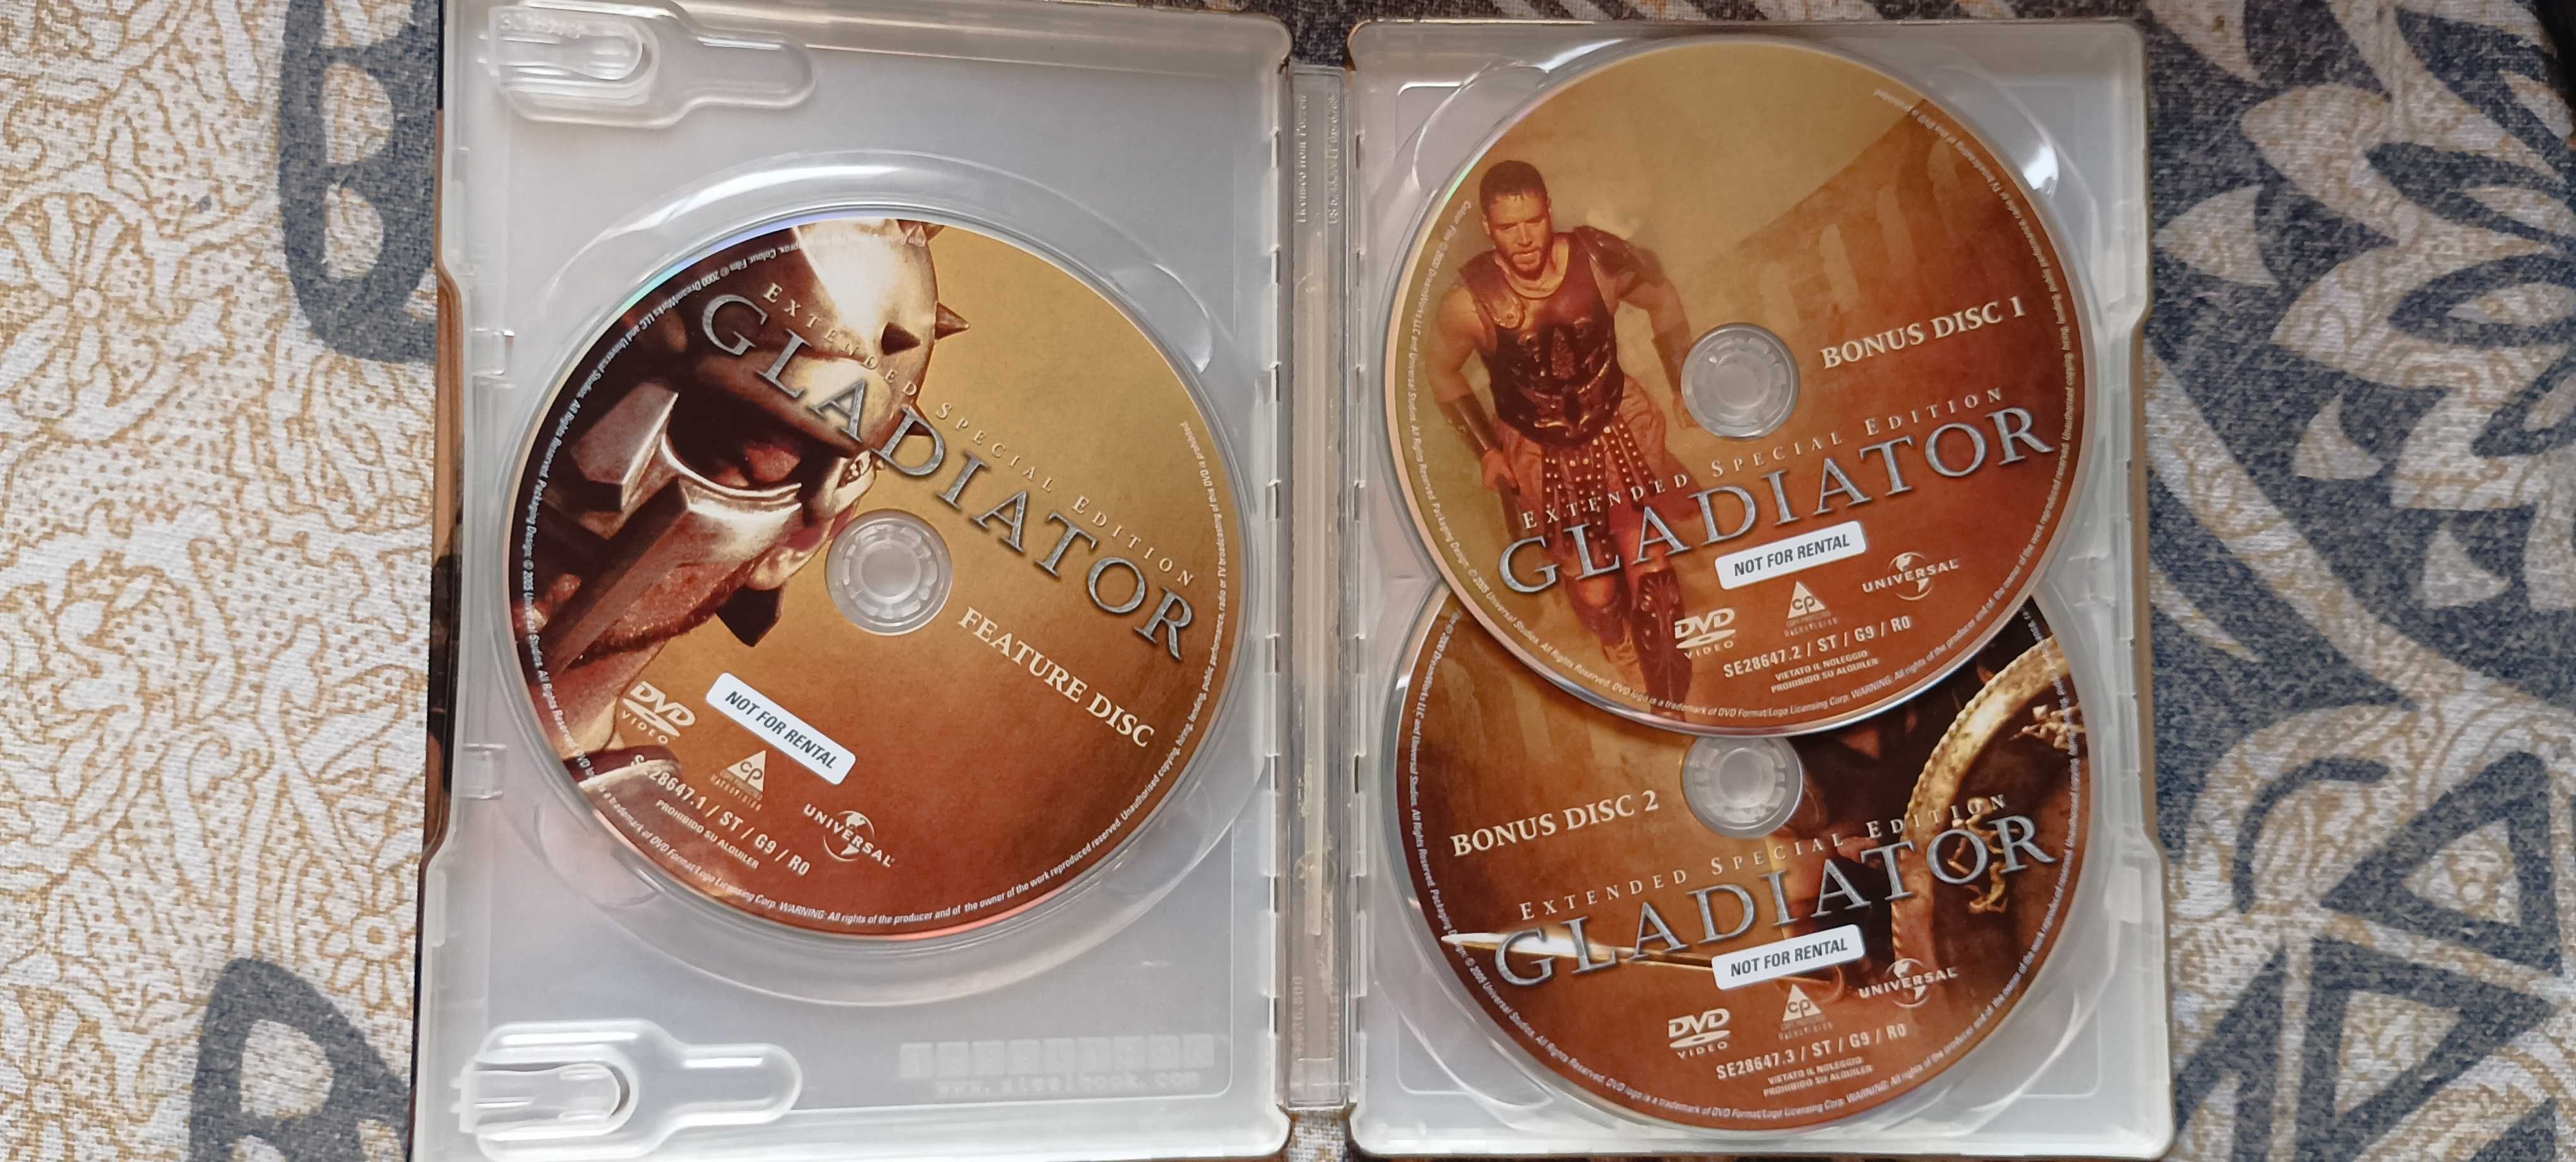 Dvd filme Gladiador